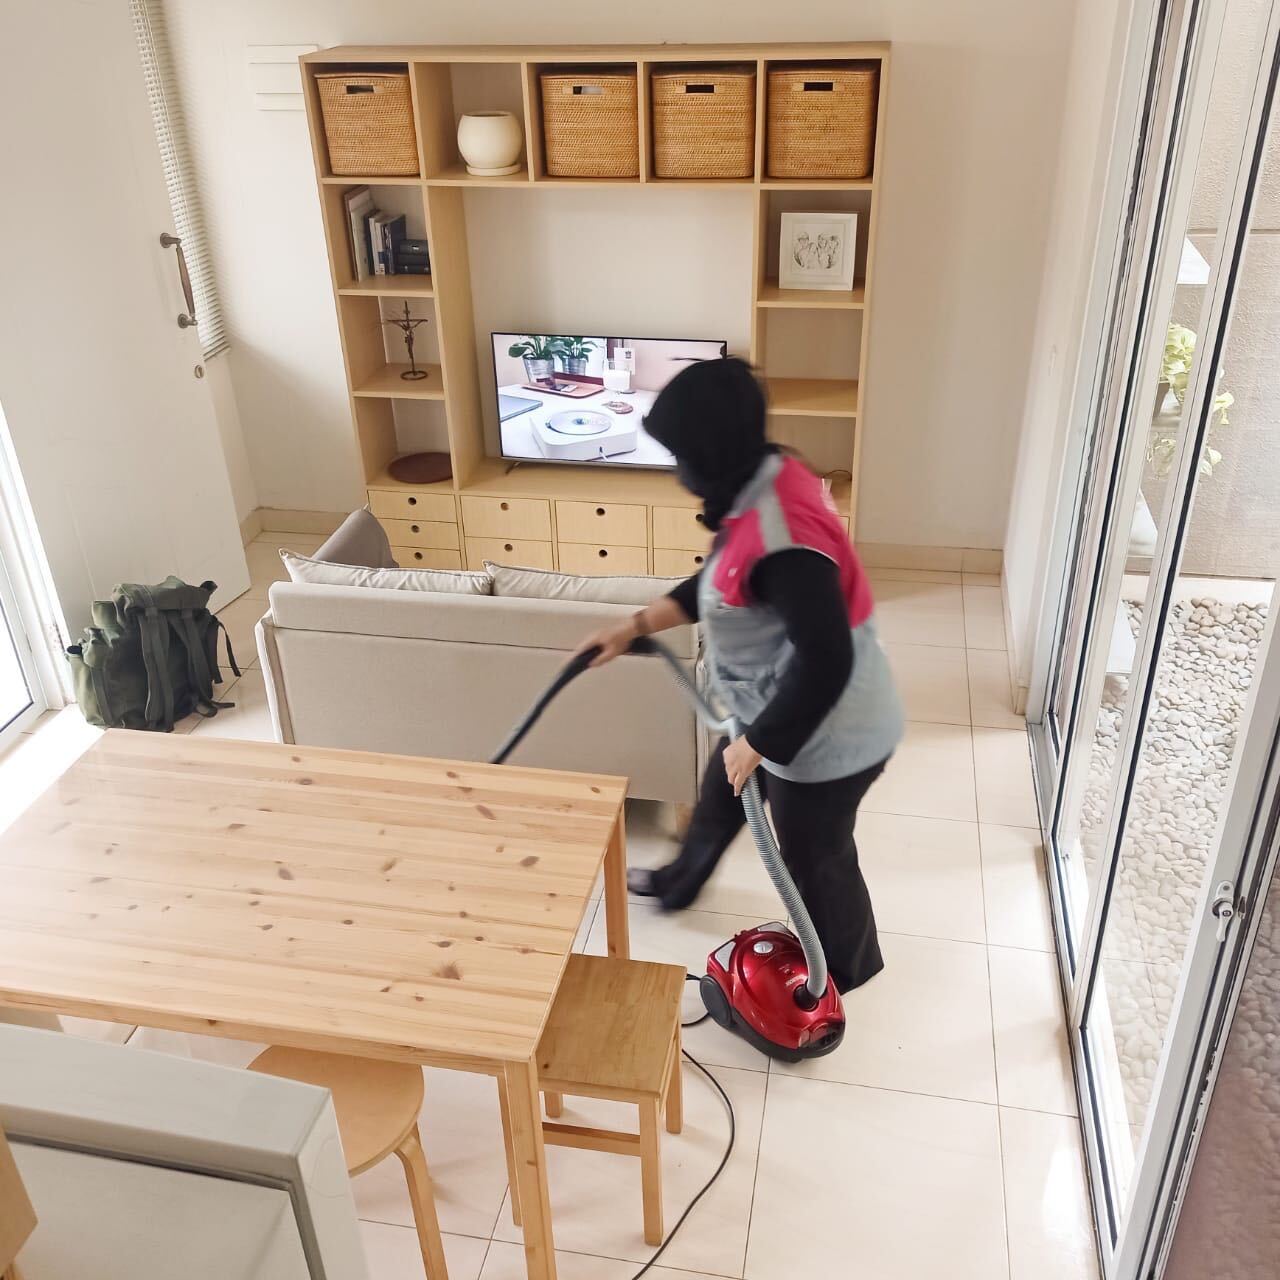 penyedia jasa daily cleaning Sejasa sedang membersihkan lantai dengan menggunakan vacuum cleaner